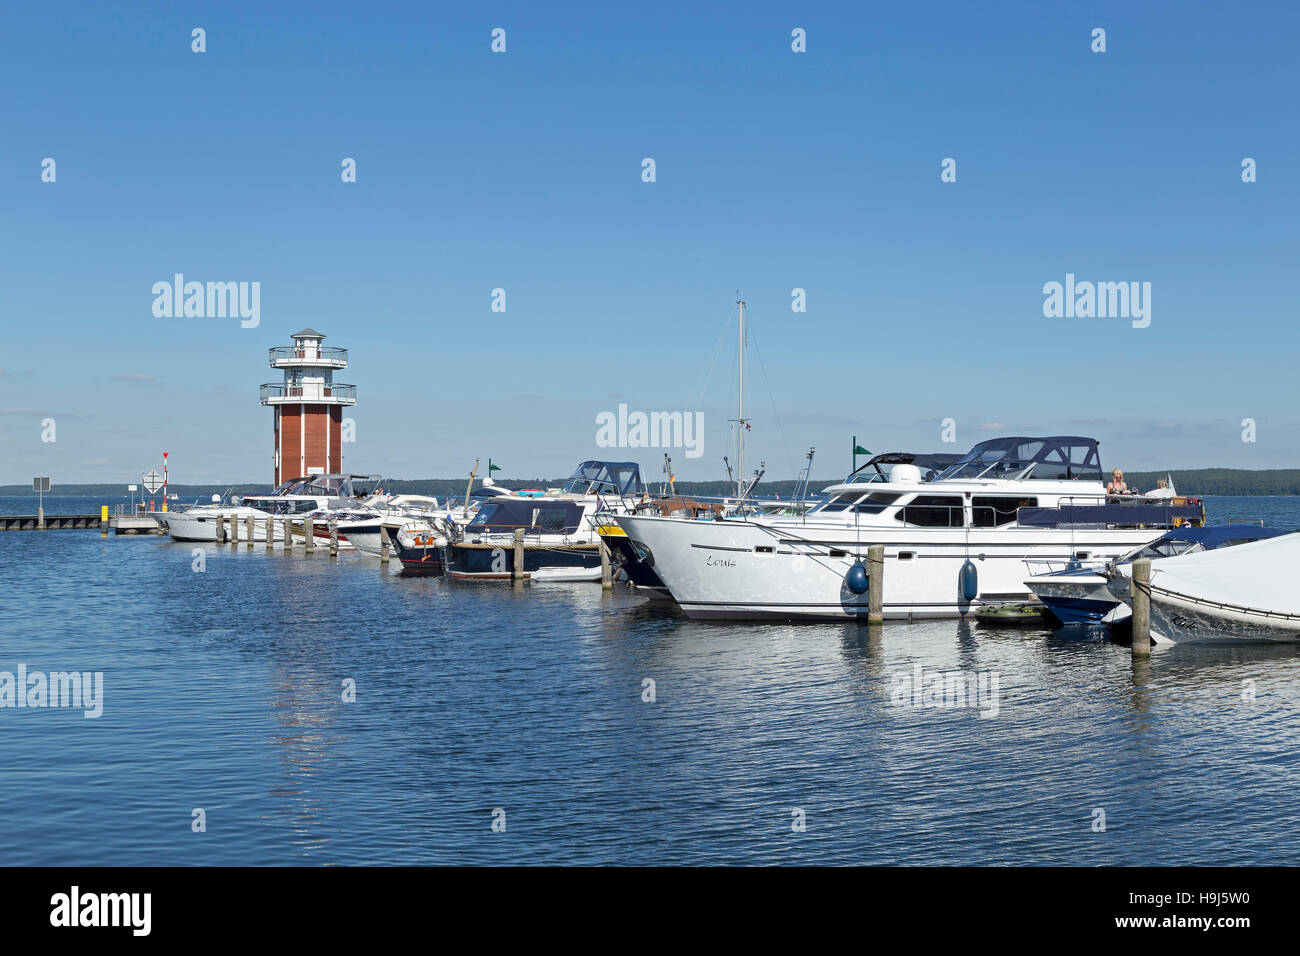 Aussichtsturm und Marina, Plau am See, Mecklenburgische Seenplatte, Mecklenburg-West Pomerania, Deutschland Stockfoto